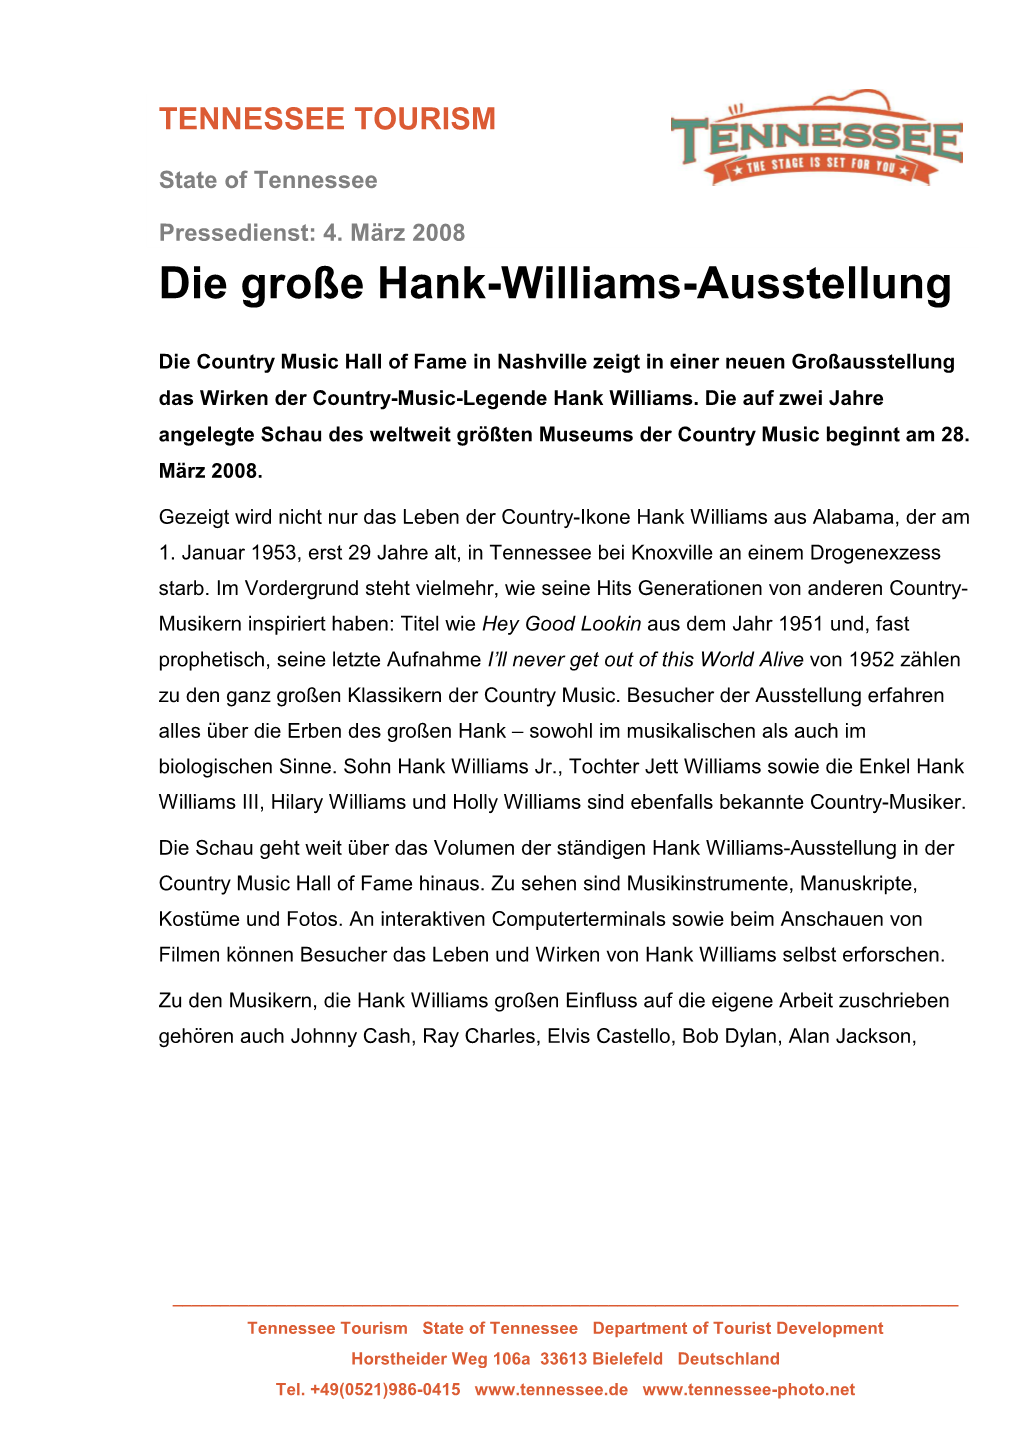 Die Große Hank-Williams-Ausstellung